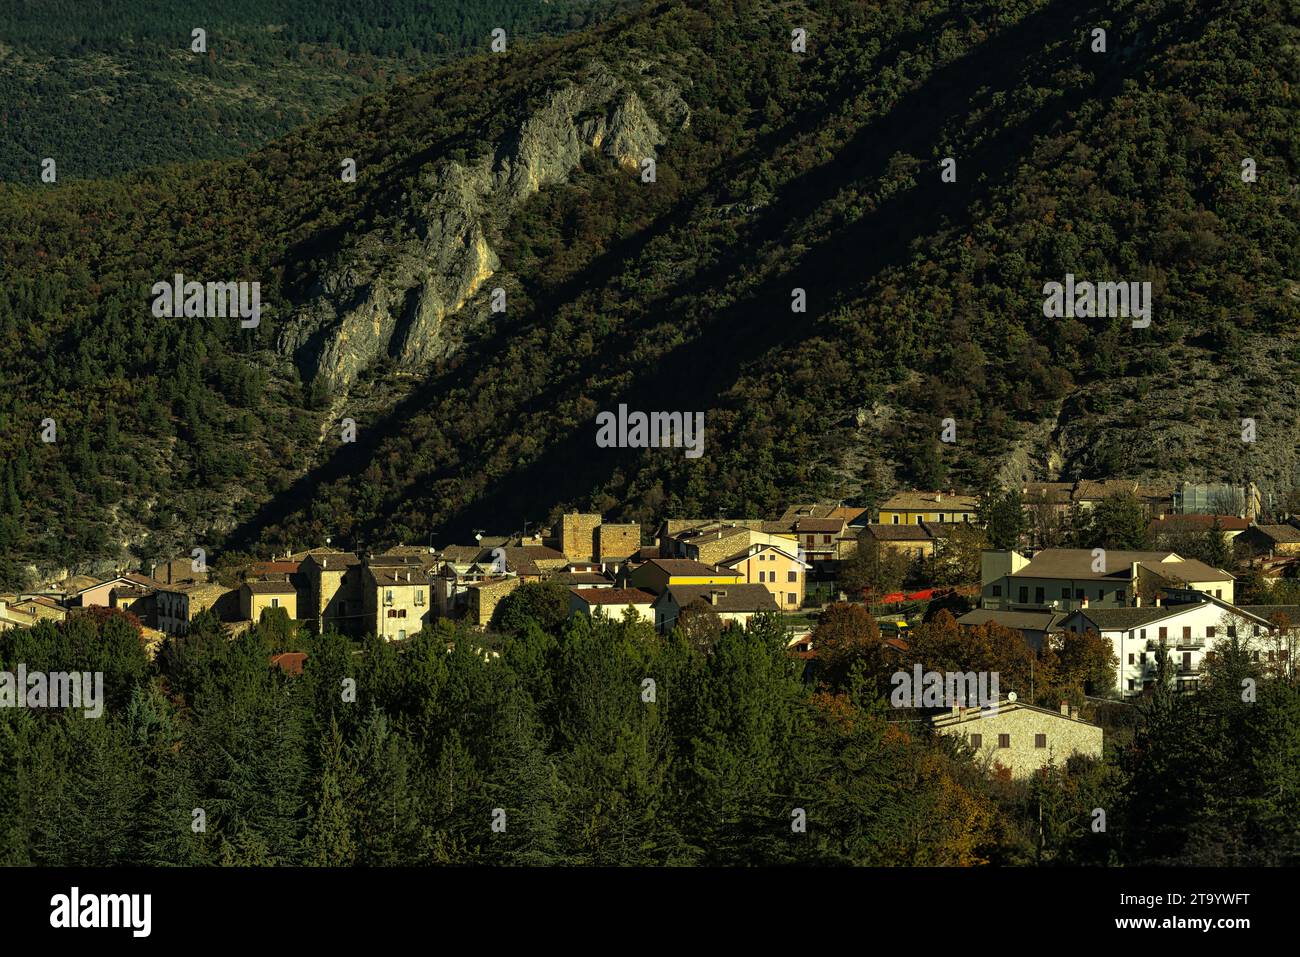 Paesaggio delle antiche case in pietra addossate l'una all'altra nel borgo montano di Cansano. Cansano, provincia dell'Aquila, Abruzzo, Italia Foto Stock